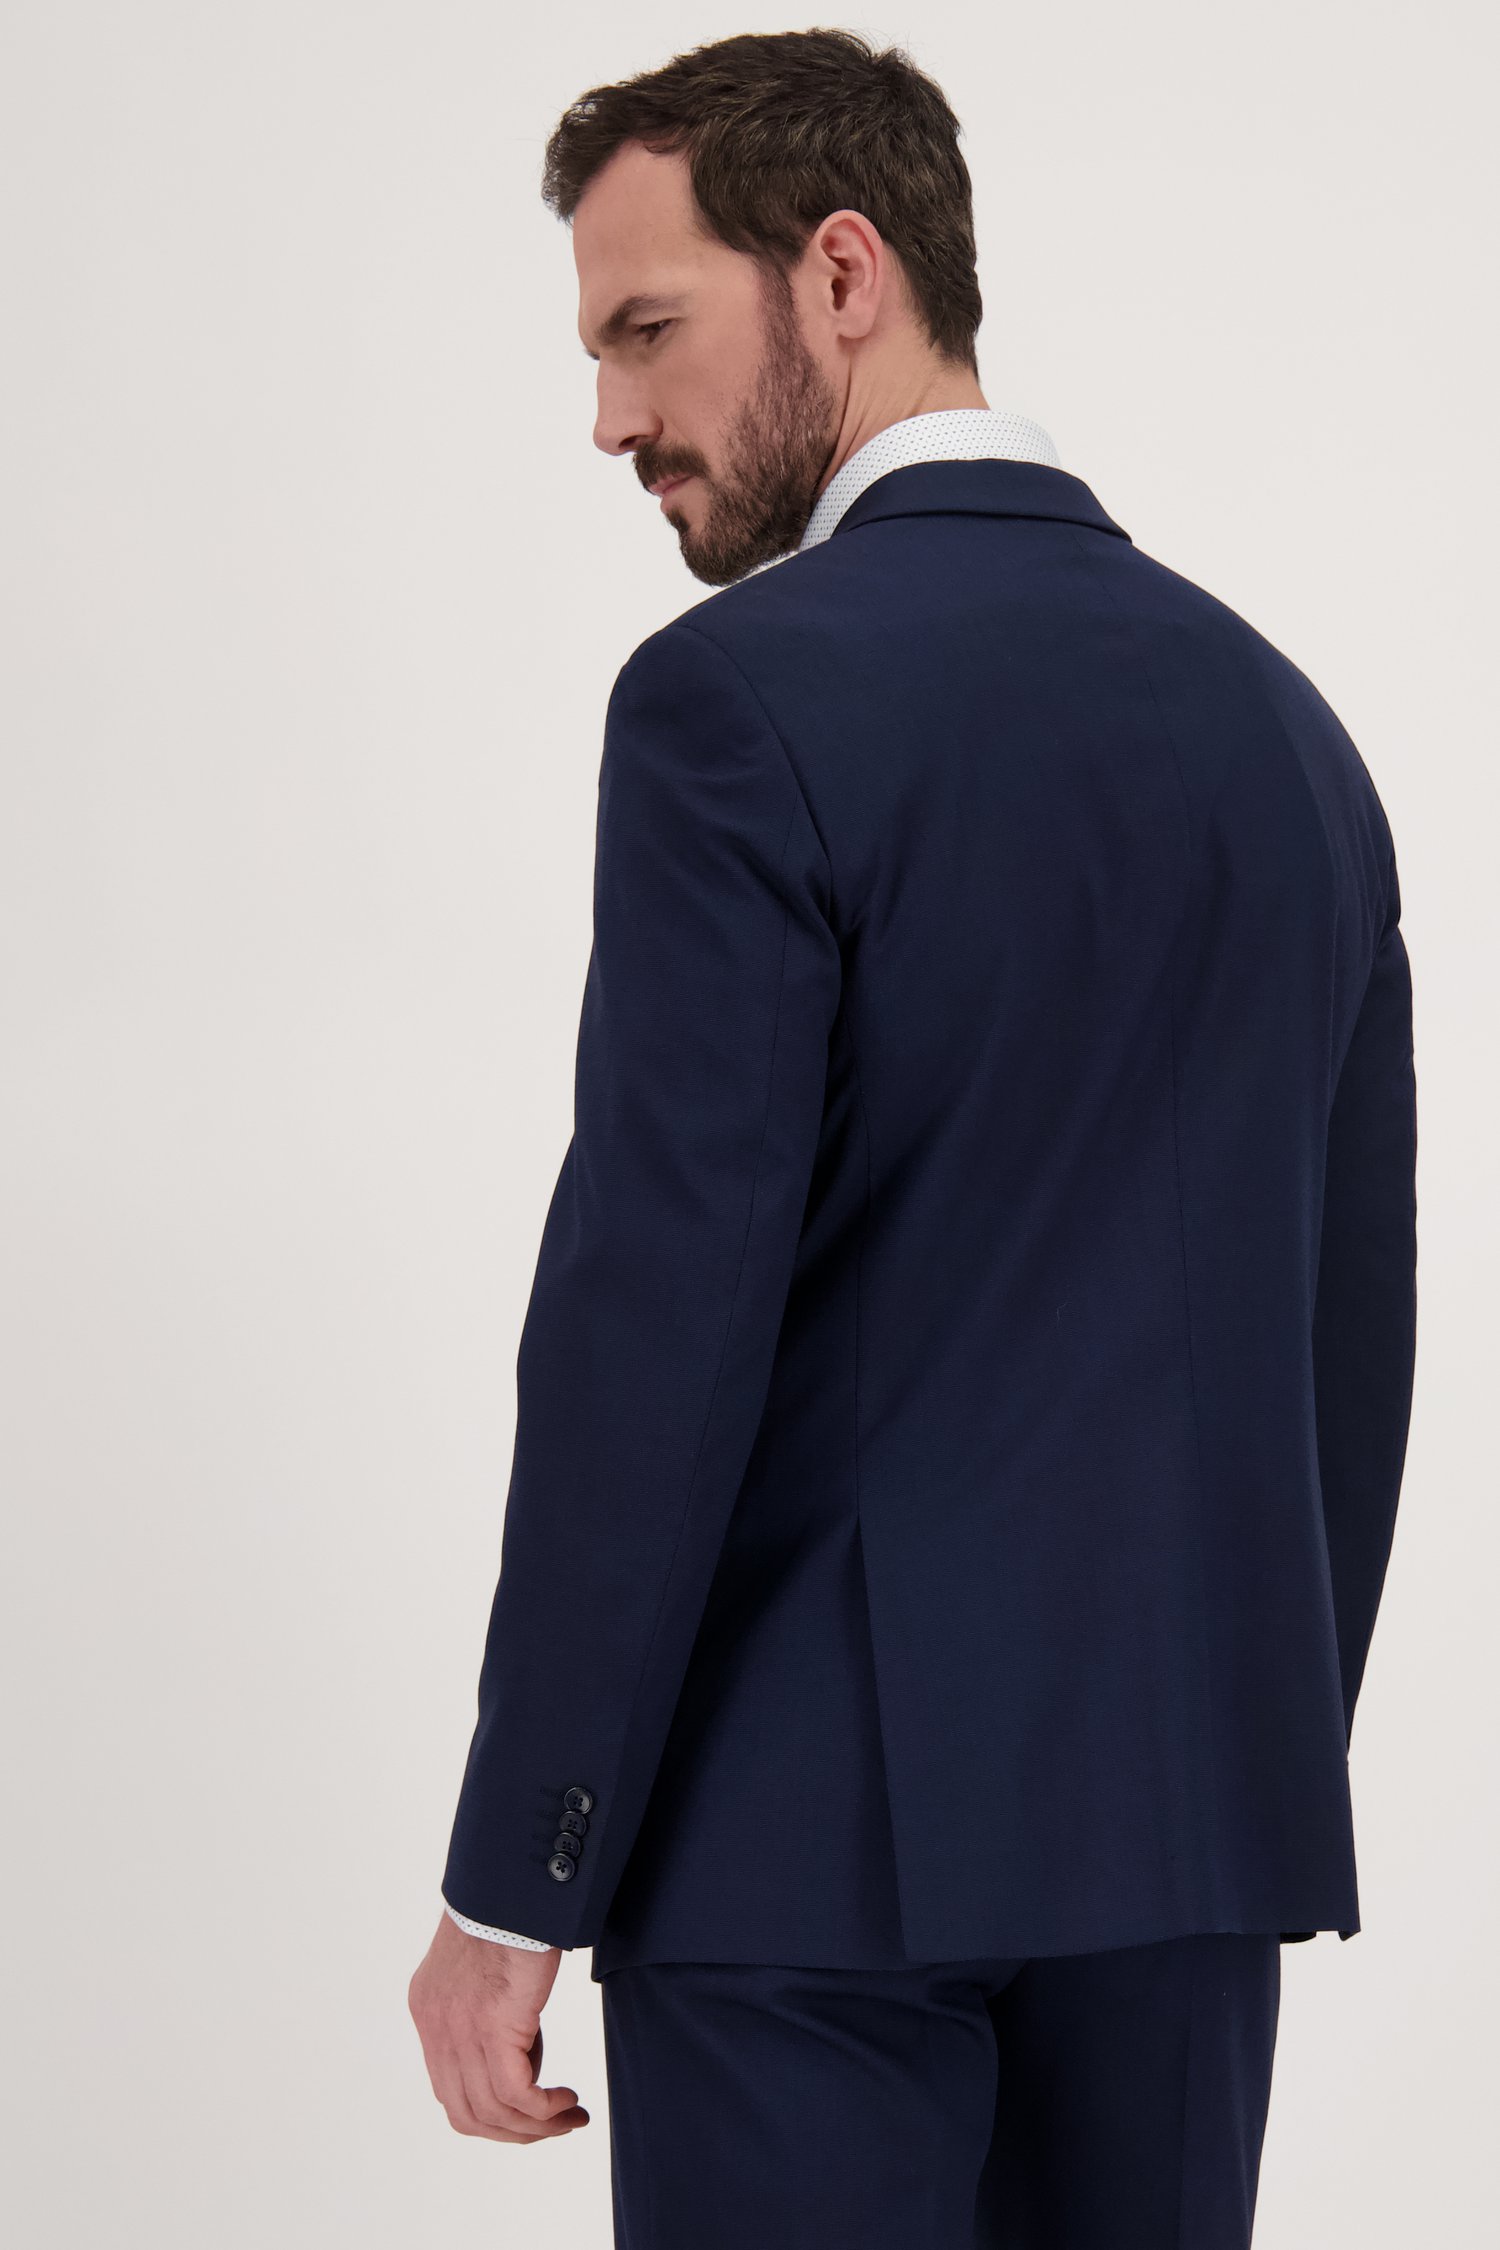 Veste de costume bleu foncé - Rit - Regurlar fit de Dansaert Black pour Hommes